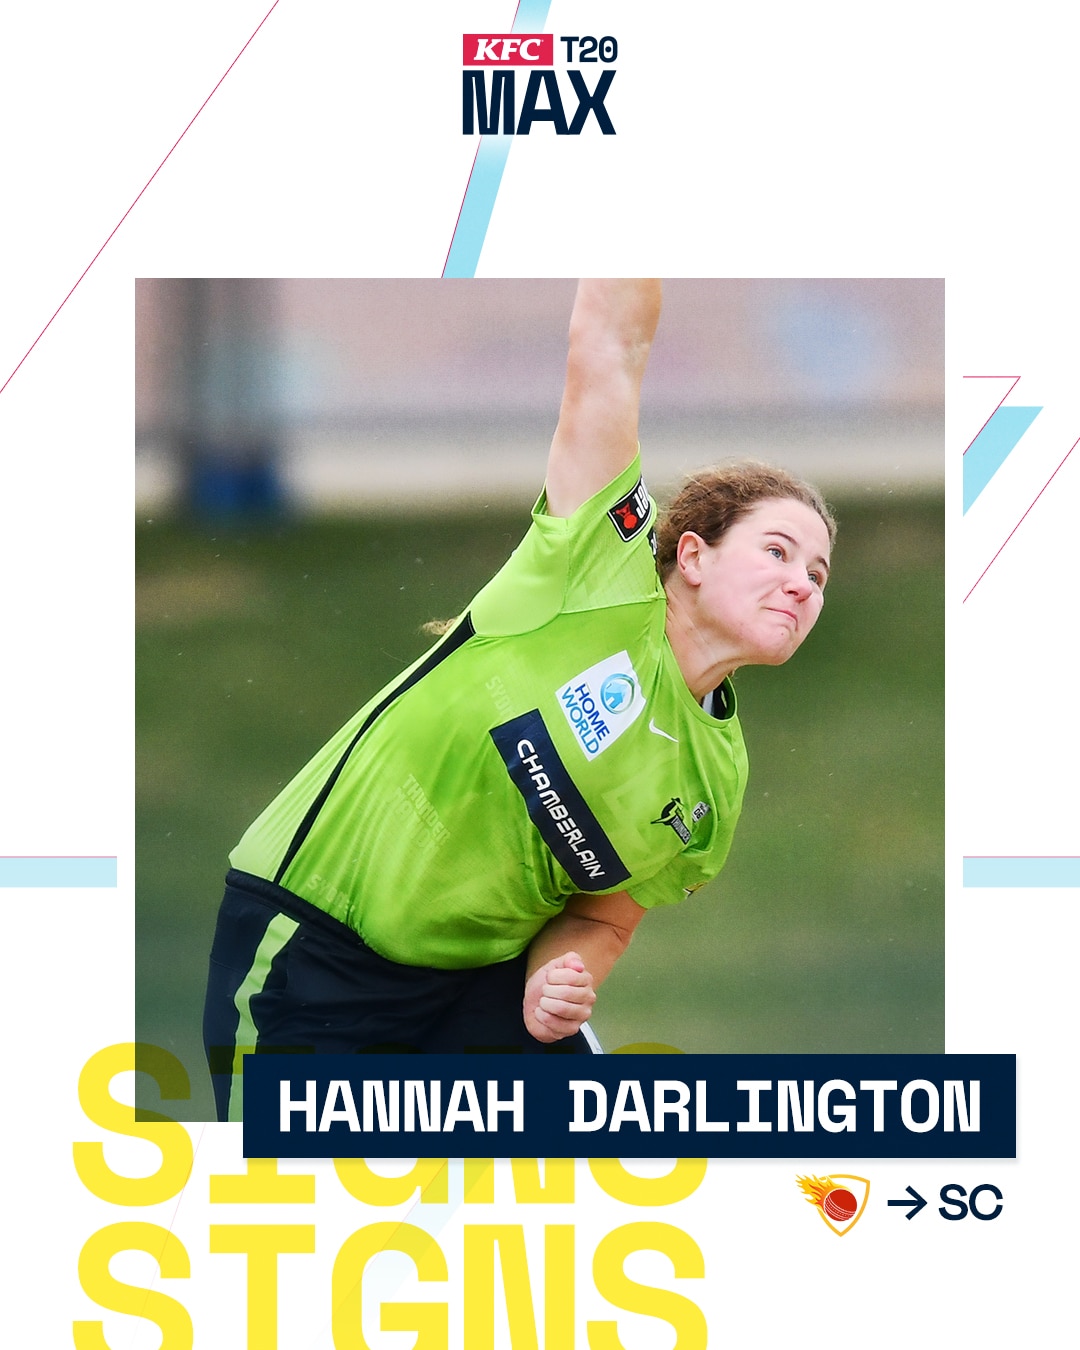 Hannah Darlington